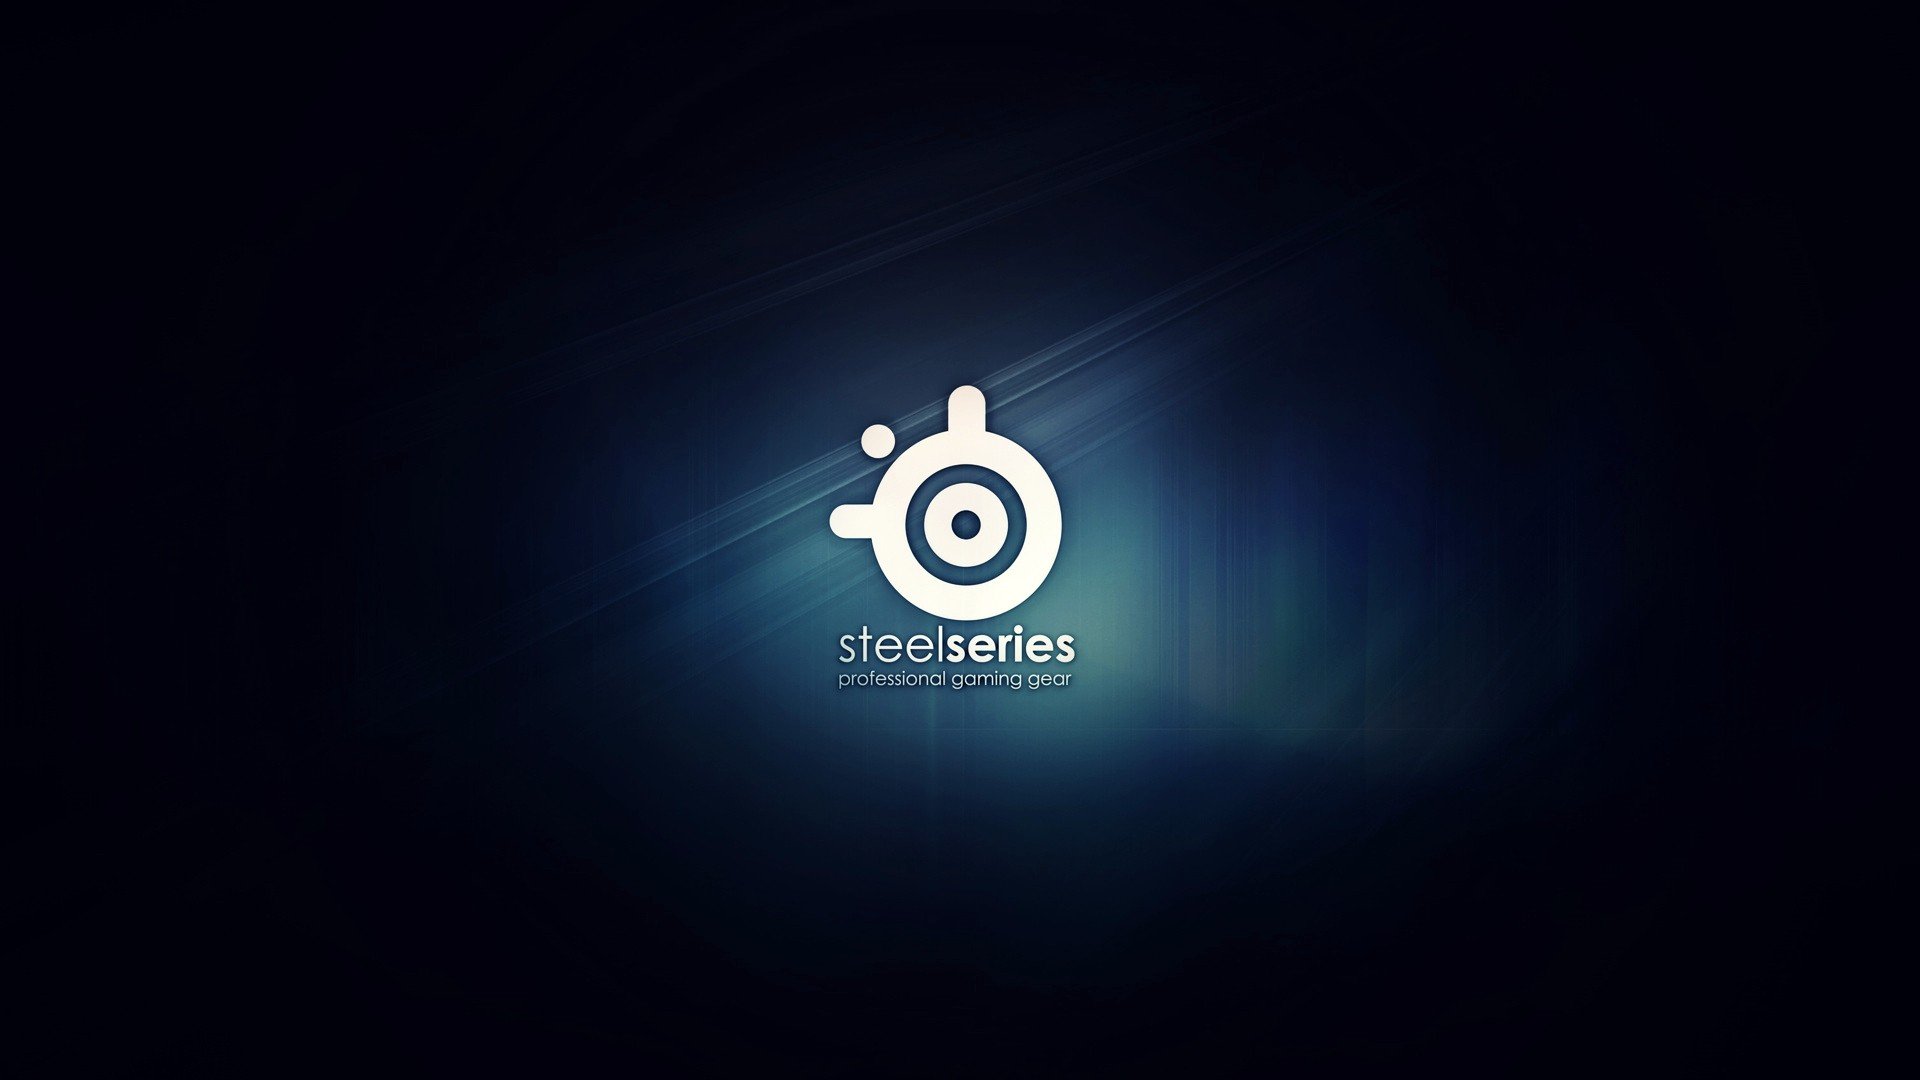 steelseries, Logos Wallpaper